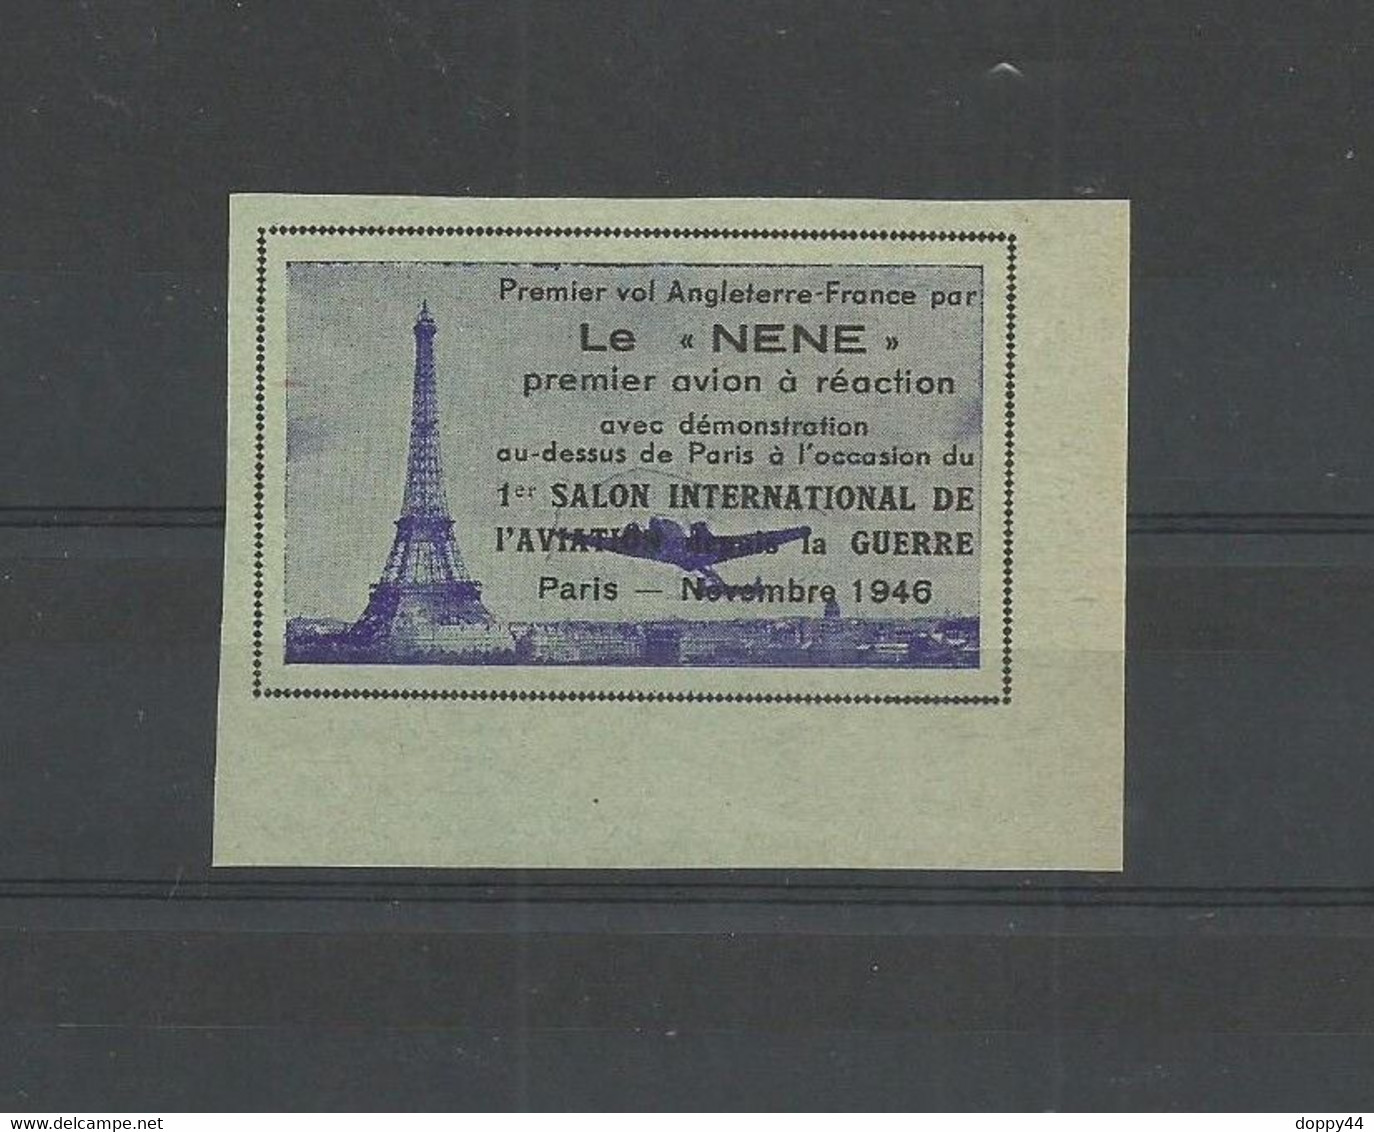 VIGNETTE AVIATION PREMIER VOL FRANCE ANGLETERRE PAR LE "NENE" A L'OCCASION DU SALON PARIS NOVEMBRE 1945. - Luftfahrt